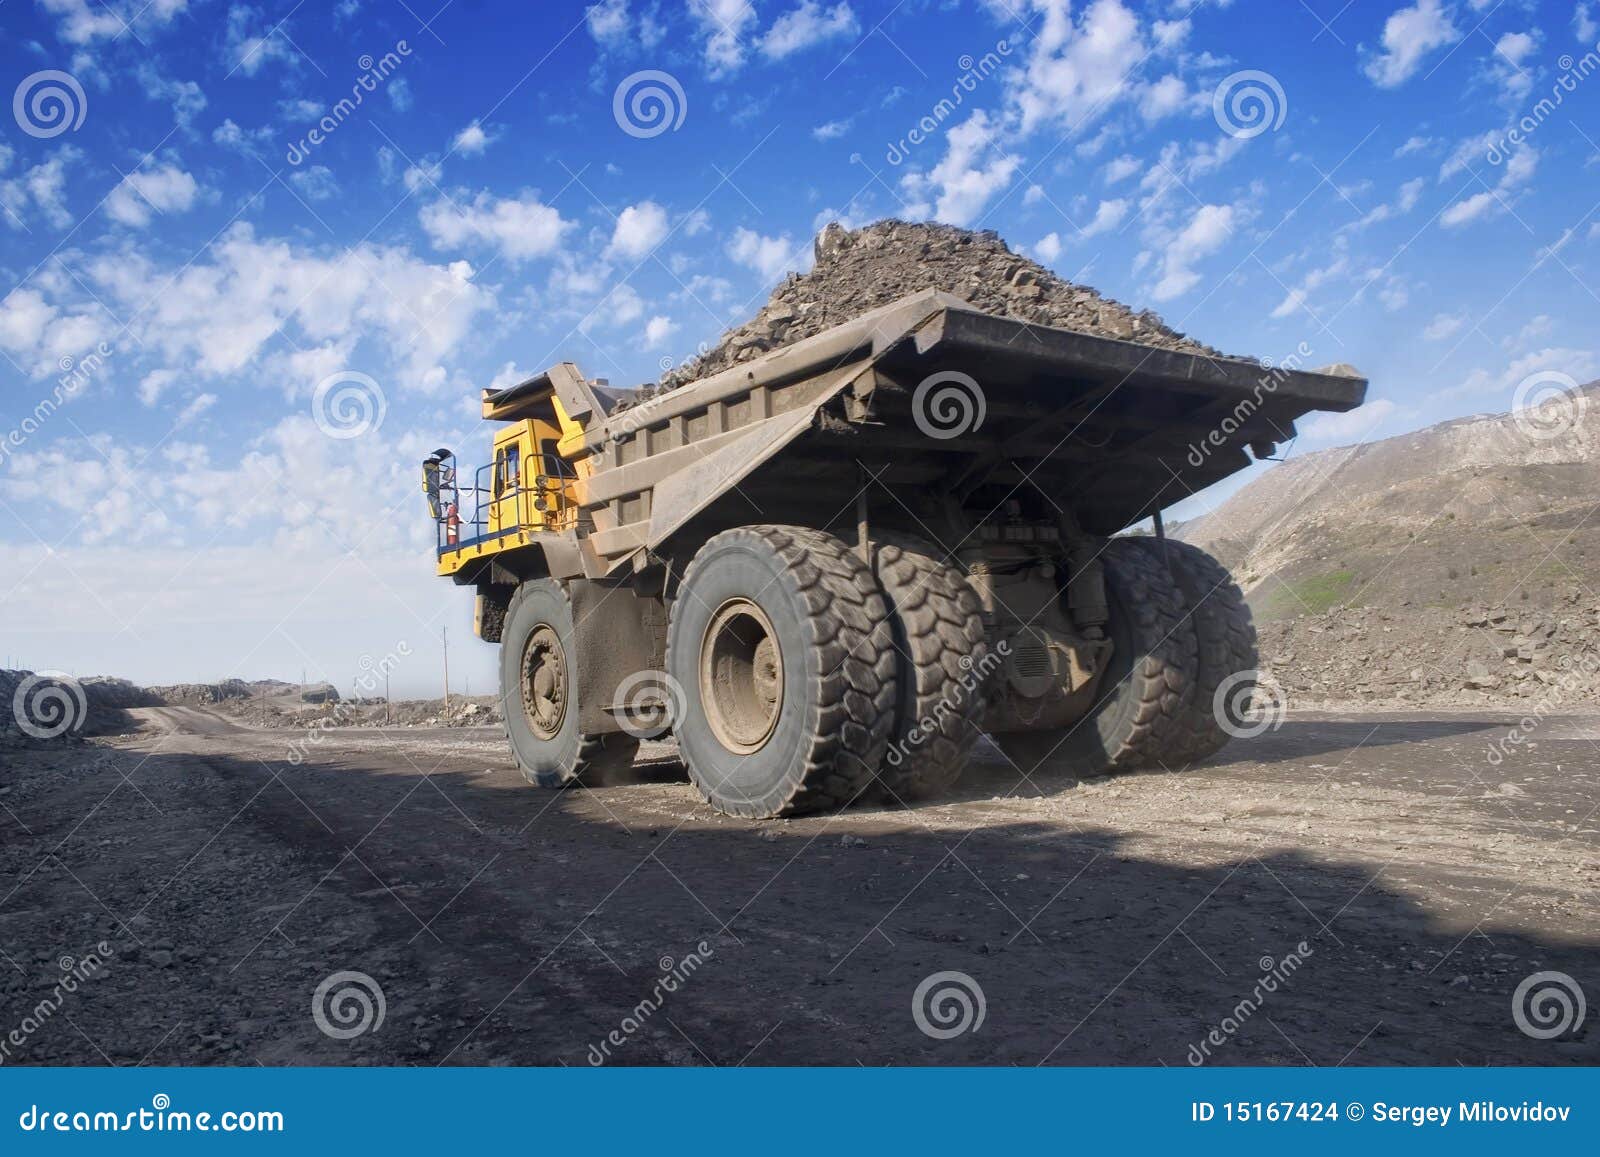 big mining truck